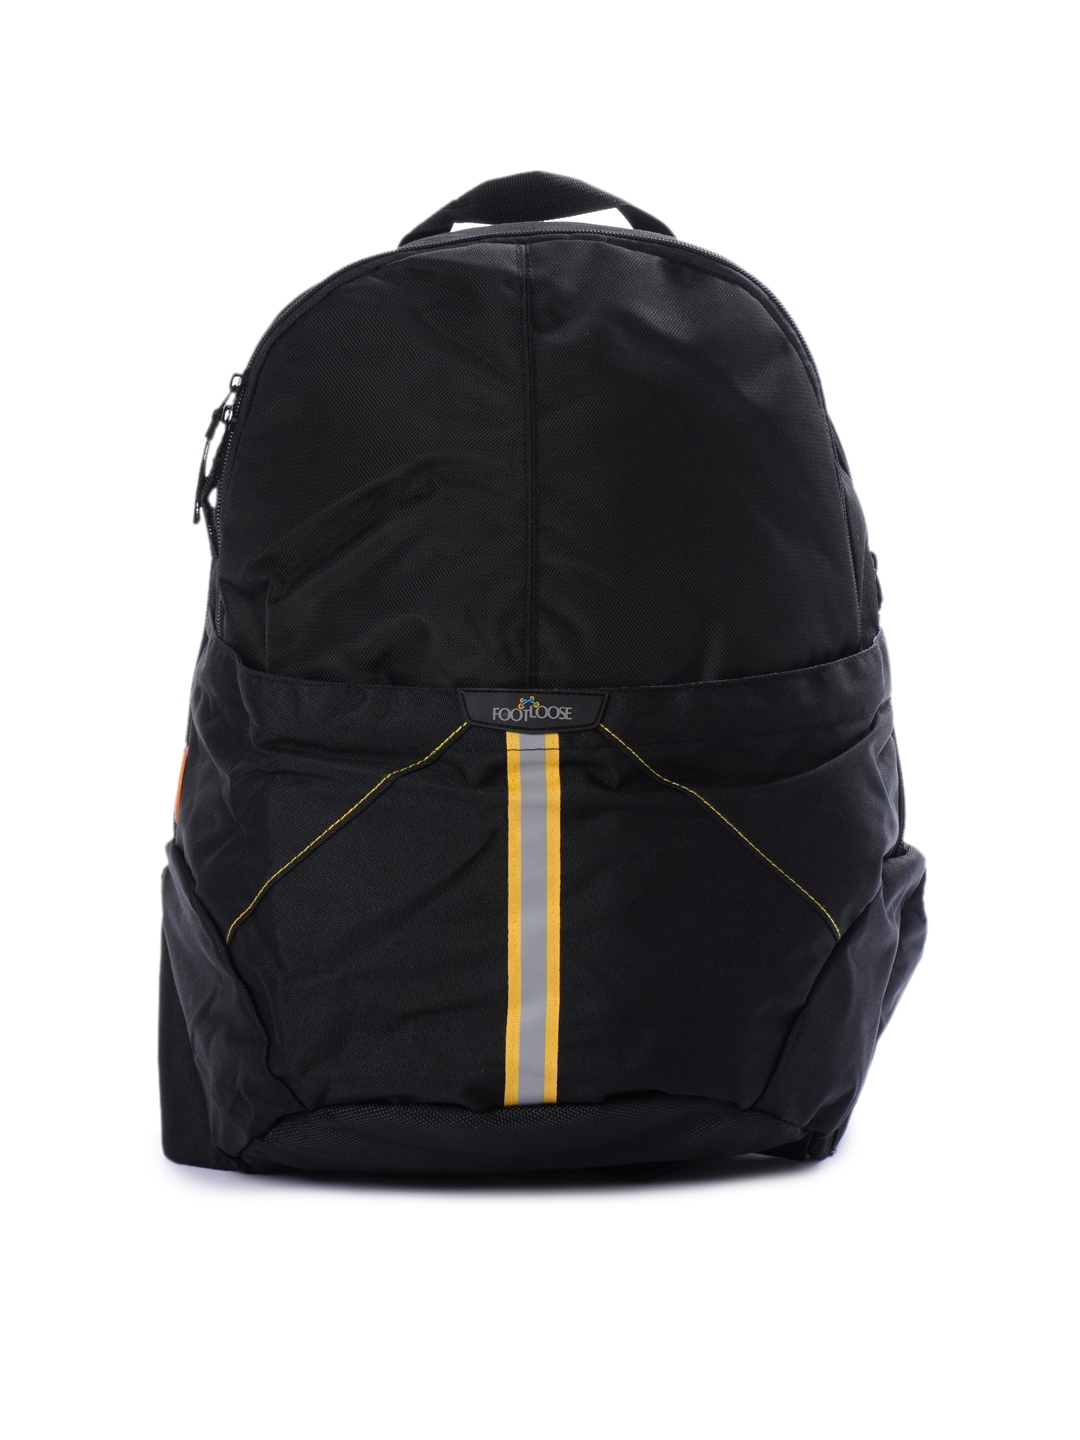 Footloose Unisex Polyester Black Backpack